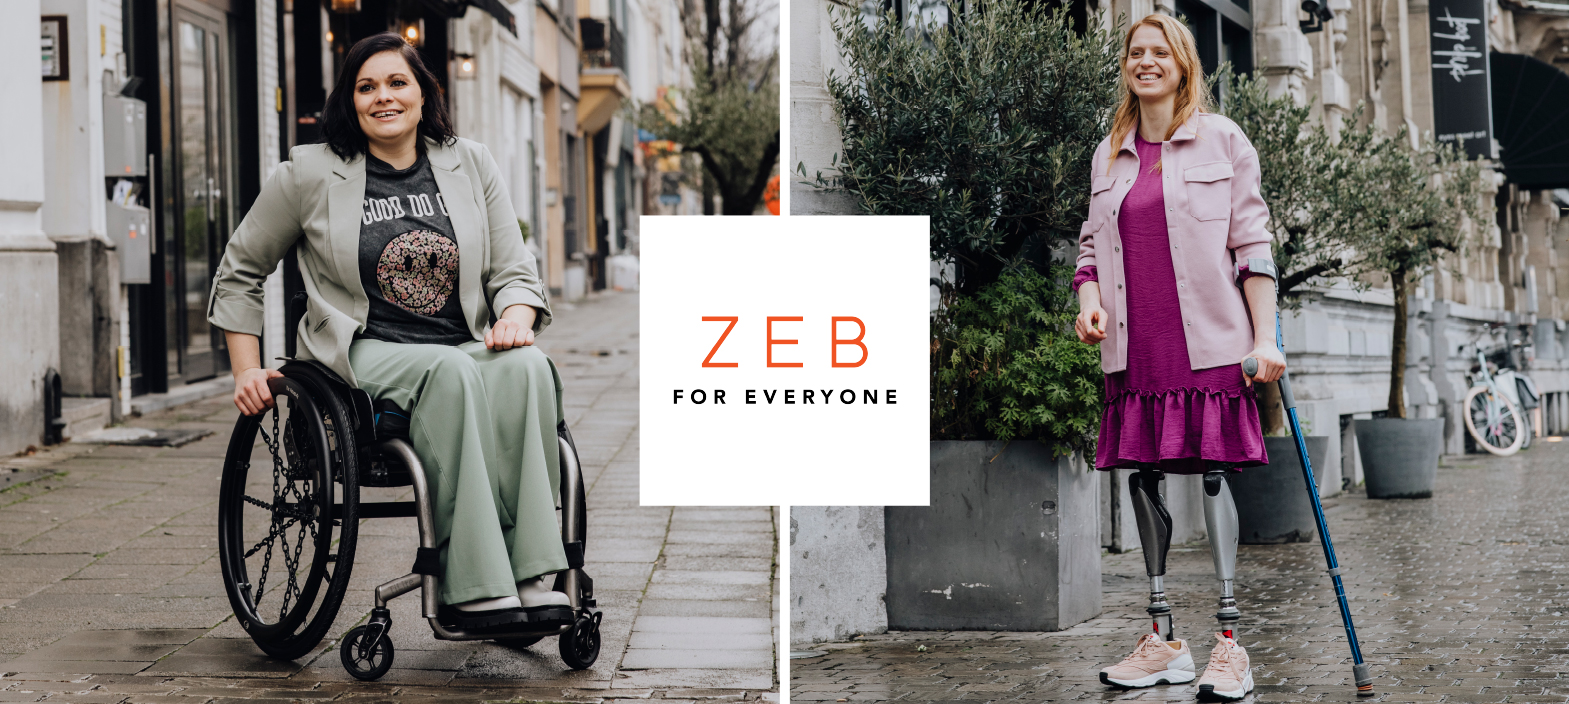 ZEB For Everyone geeft mensen met een beperking ook de kans om op hun eigen tempo te komen shoppen.